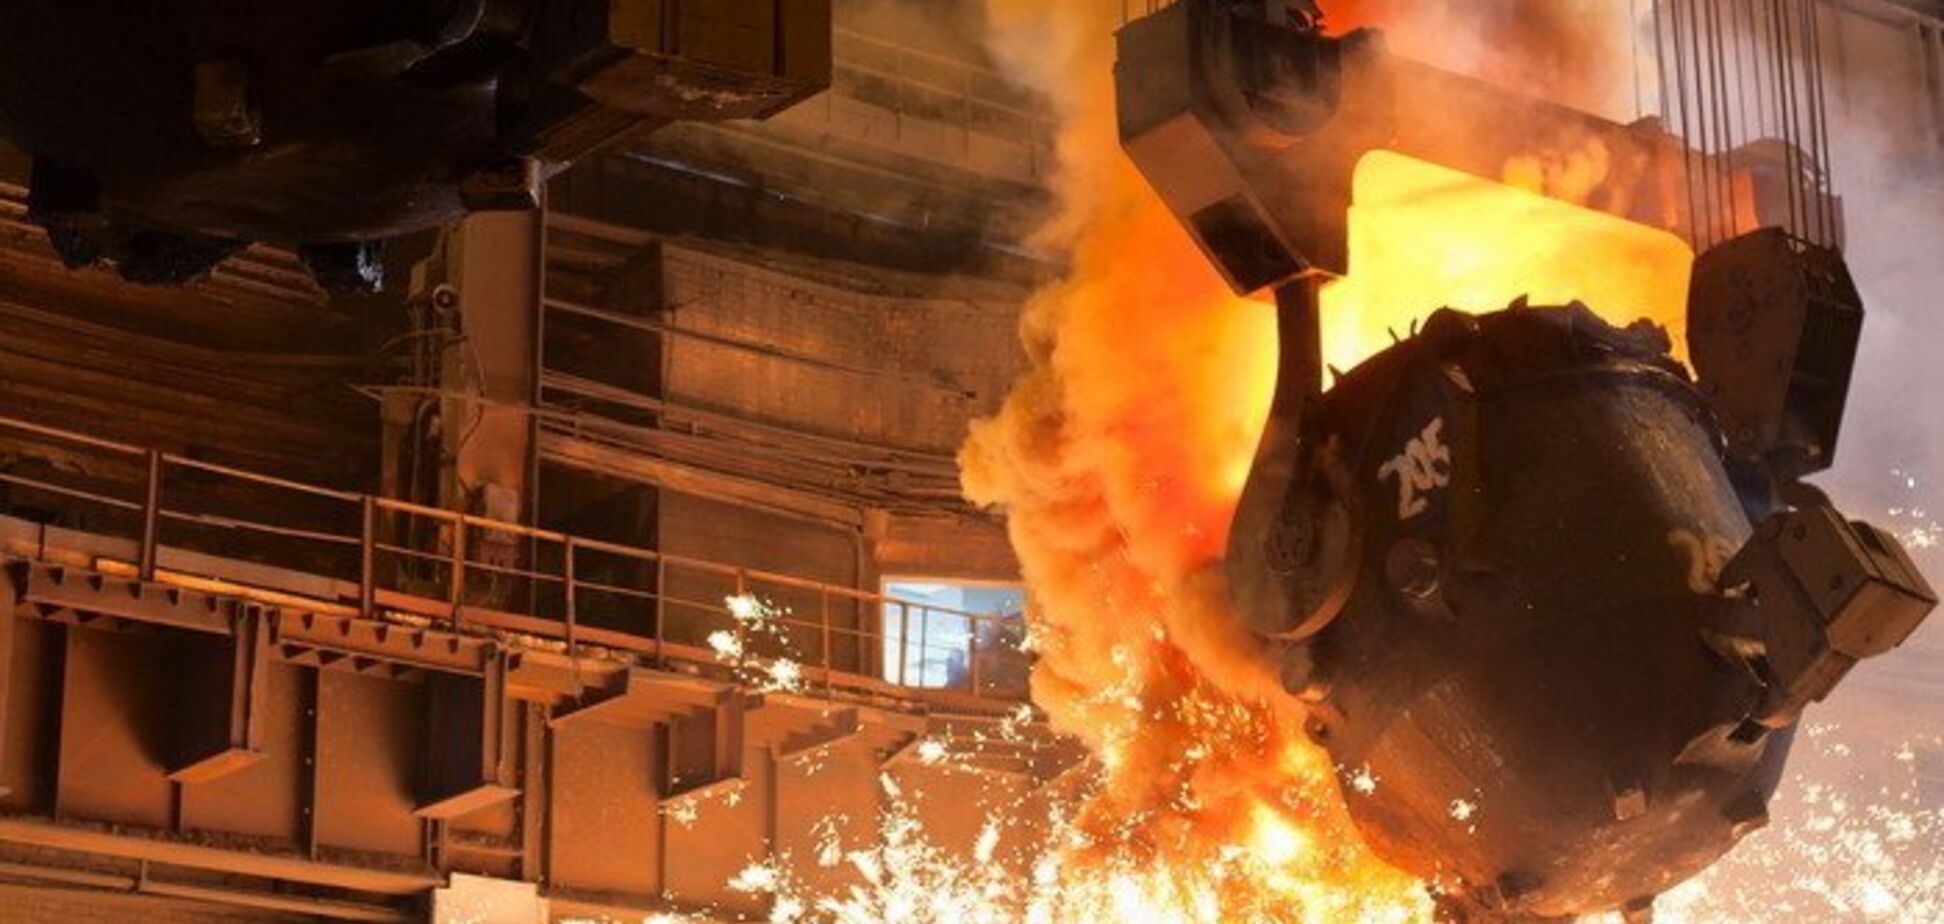 Украинская экономика просела на 30% из-за падения в металлургии – СМИ 